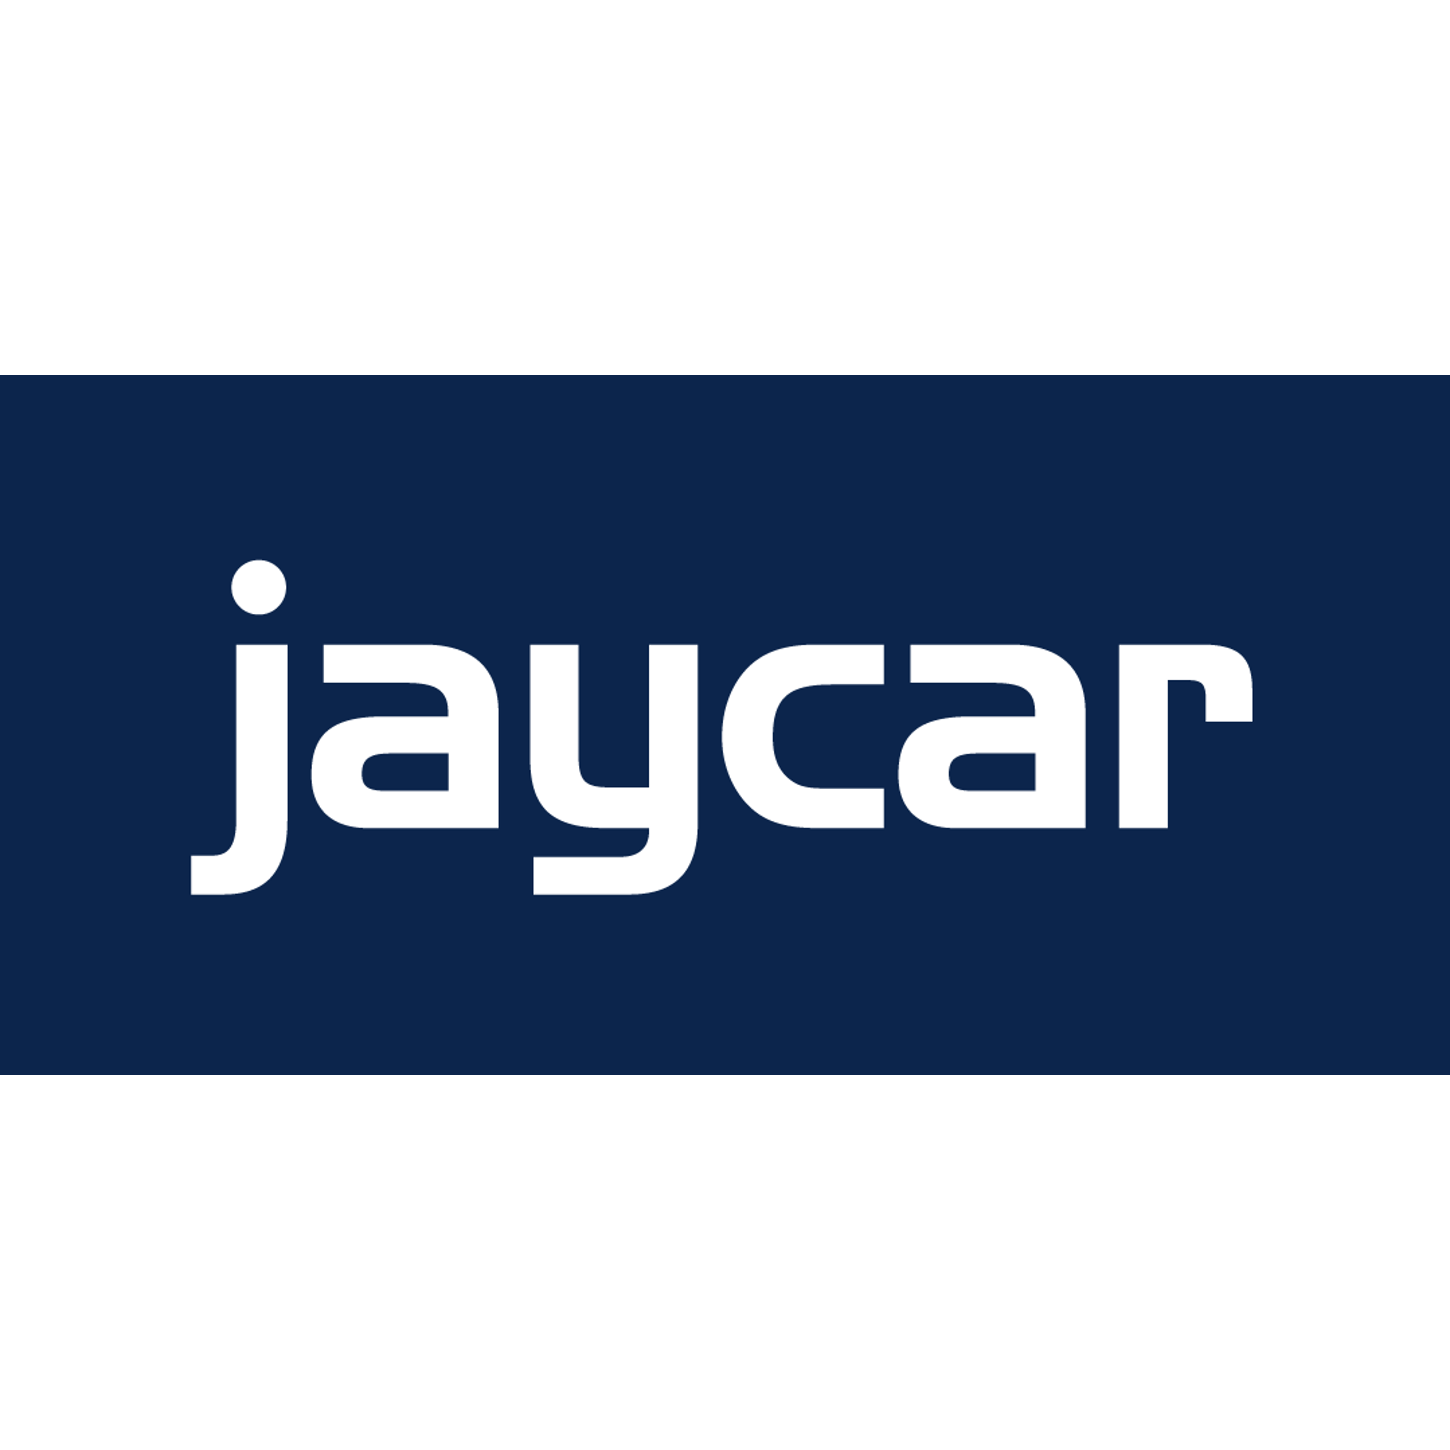 Jaycar Electronics Bundaberg - Bundaberg West, QLD 4670 - (07) 4111 2986 | ShowMeLocal.com